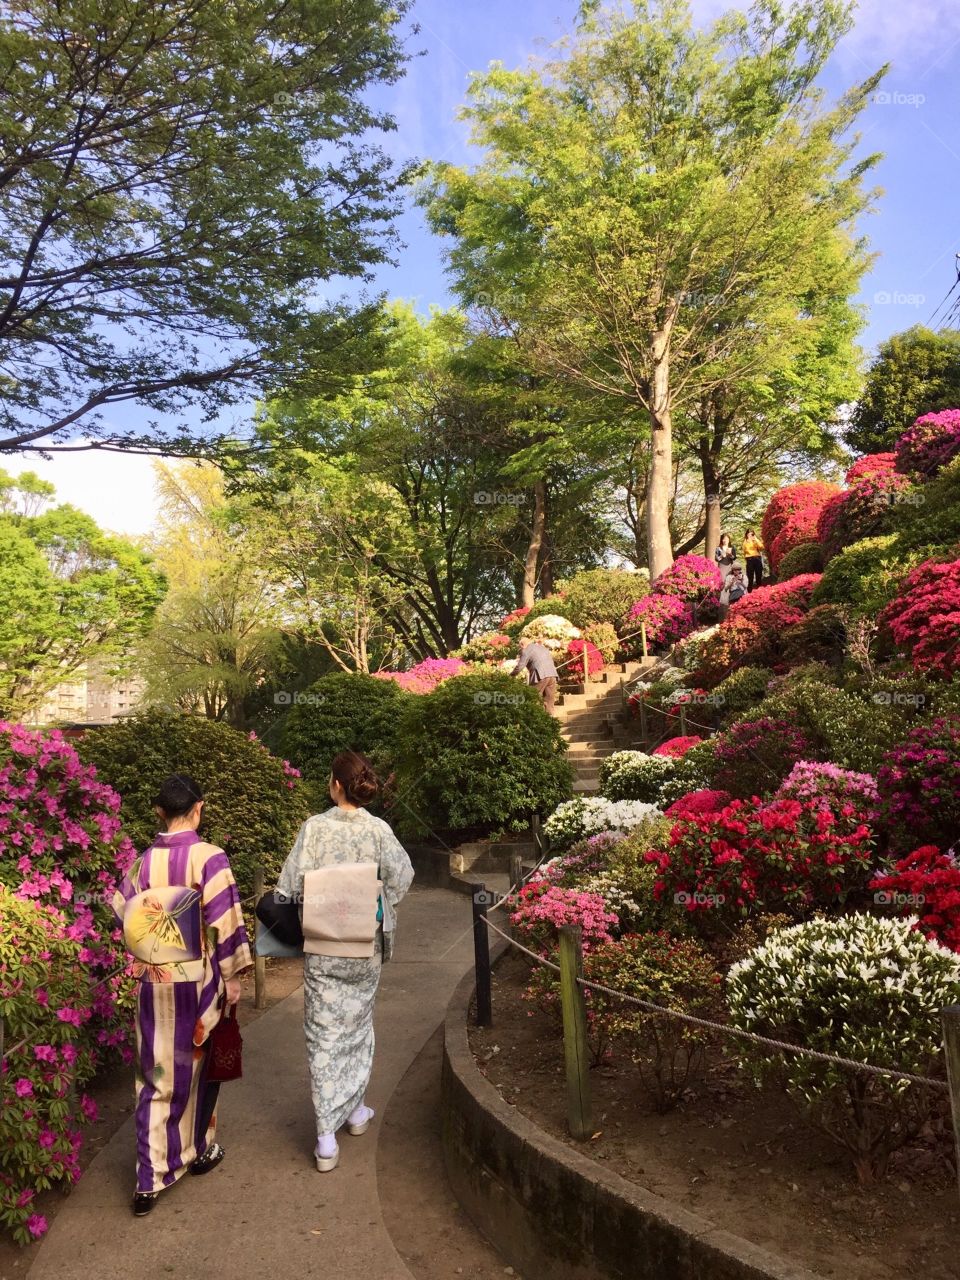 Kimono clad ladies in a Japanese garden